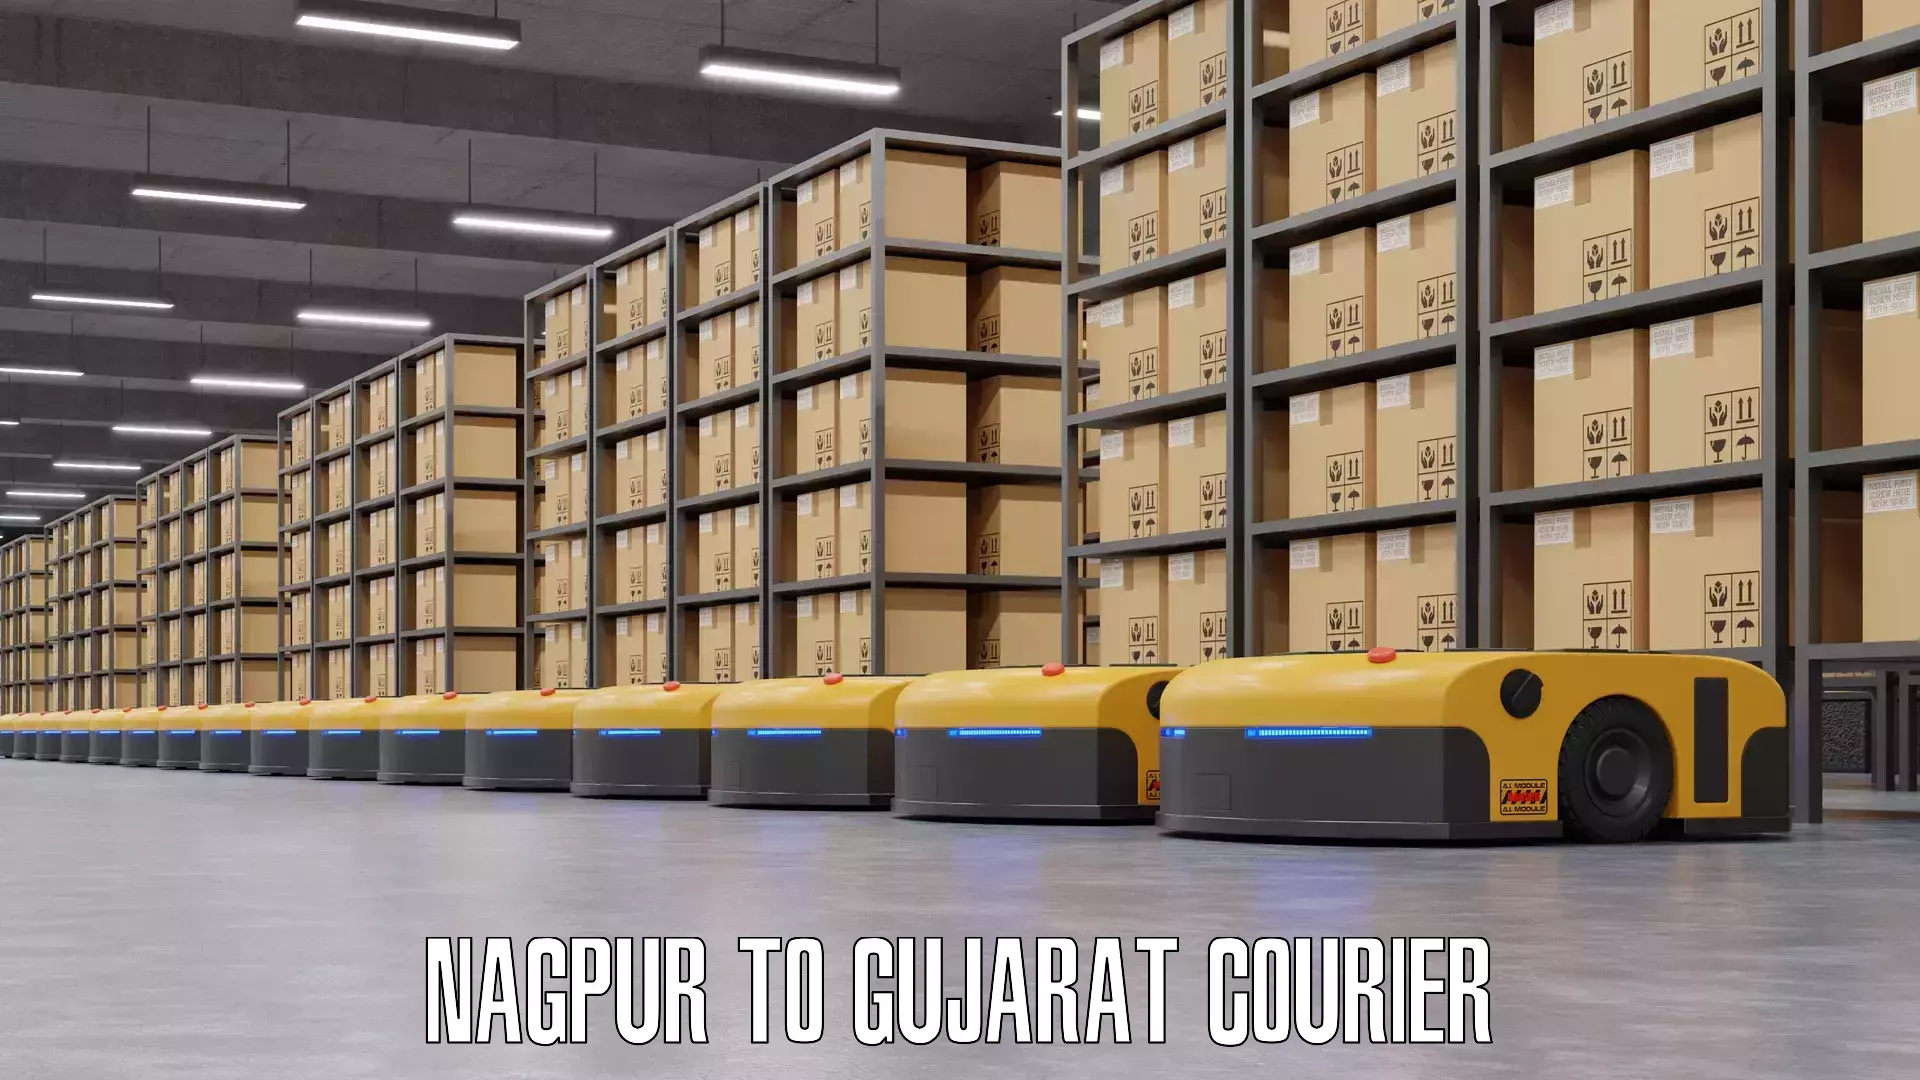 Door-to-door baggage service Nagpur to Gujarat